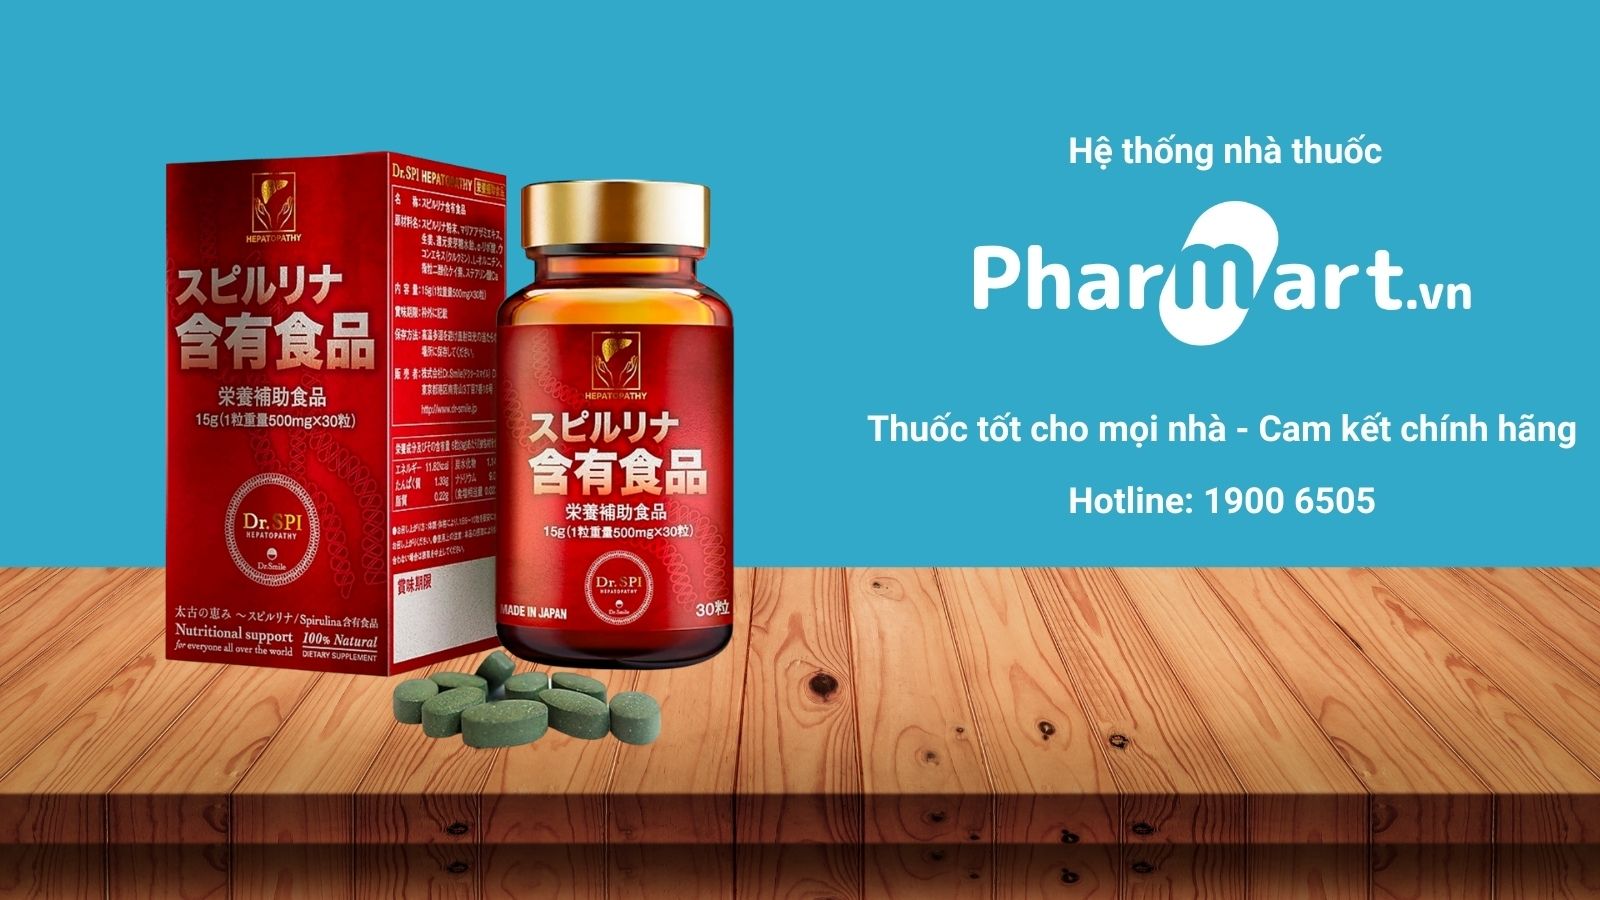 Dr Spi Hepatopathy hiện đang được bán chính hãng tại Nhà thuốc Pharmart.vn